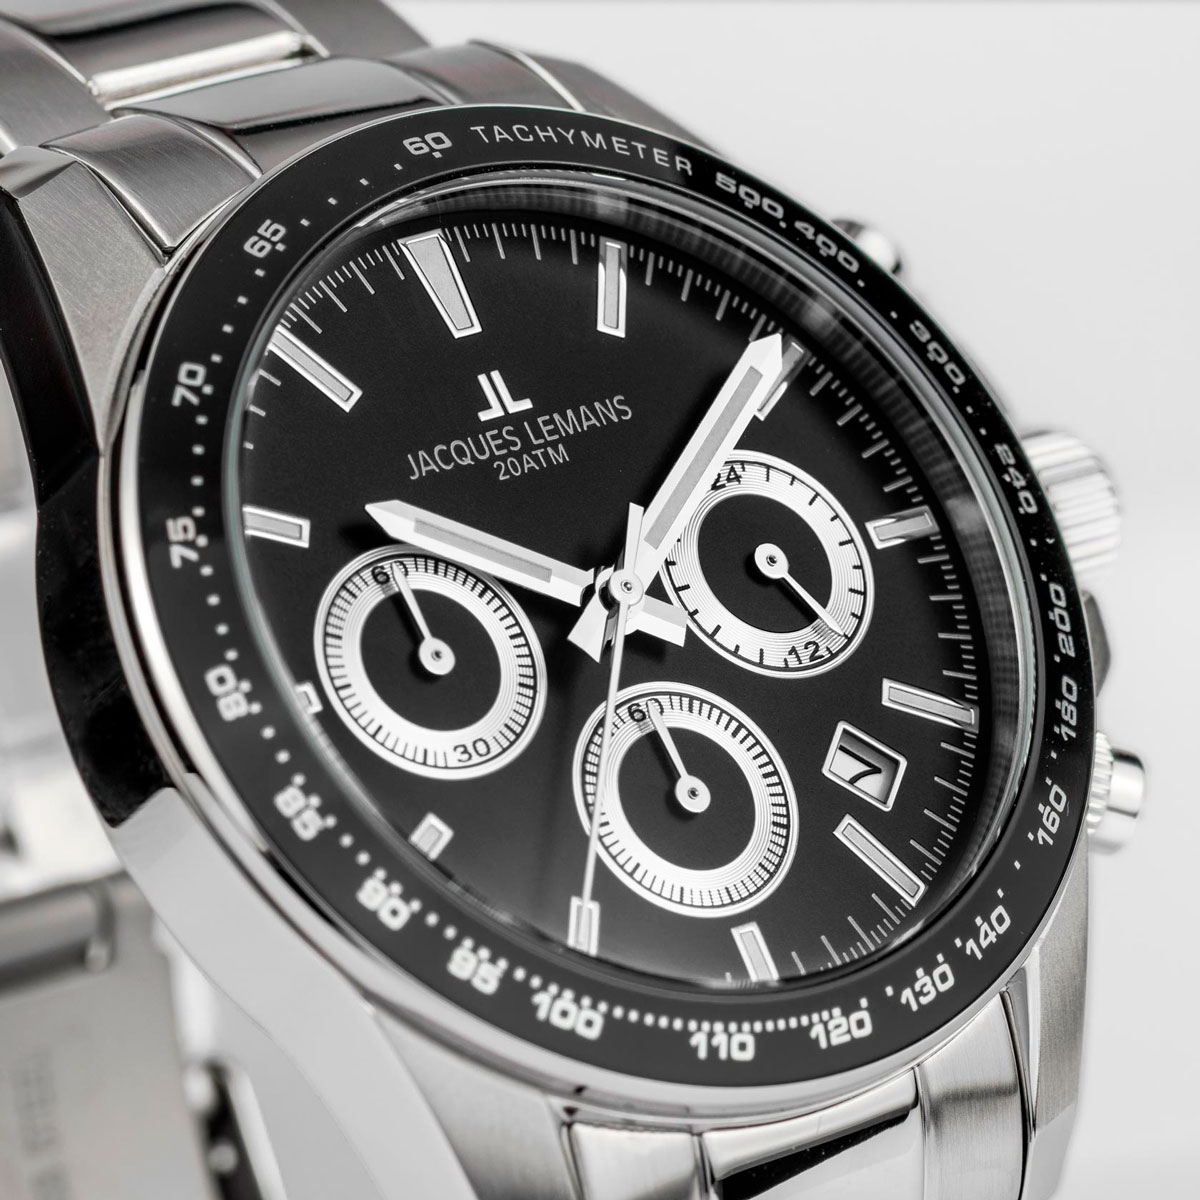 Наручные часы Jacques Lemans — купить часы Жак Леман в интернет-магазине  AllTime.ru, фото и цены в каталоге